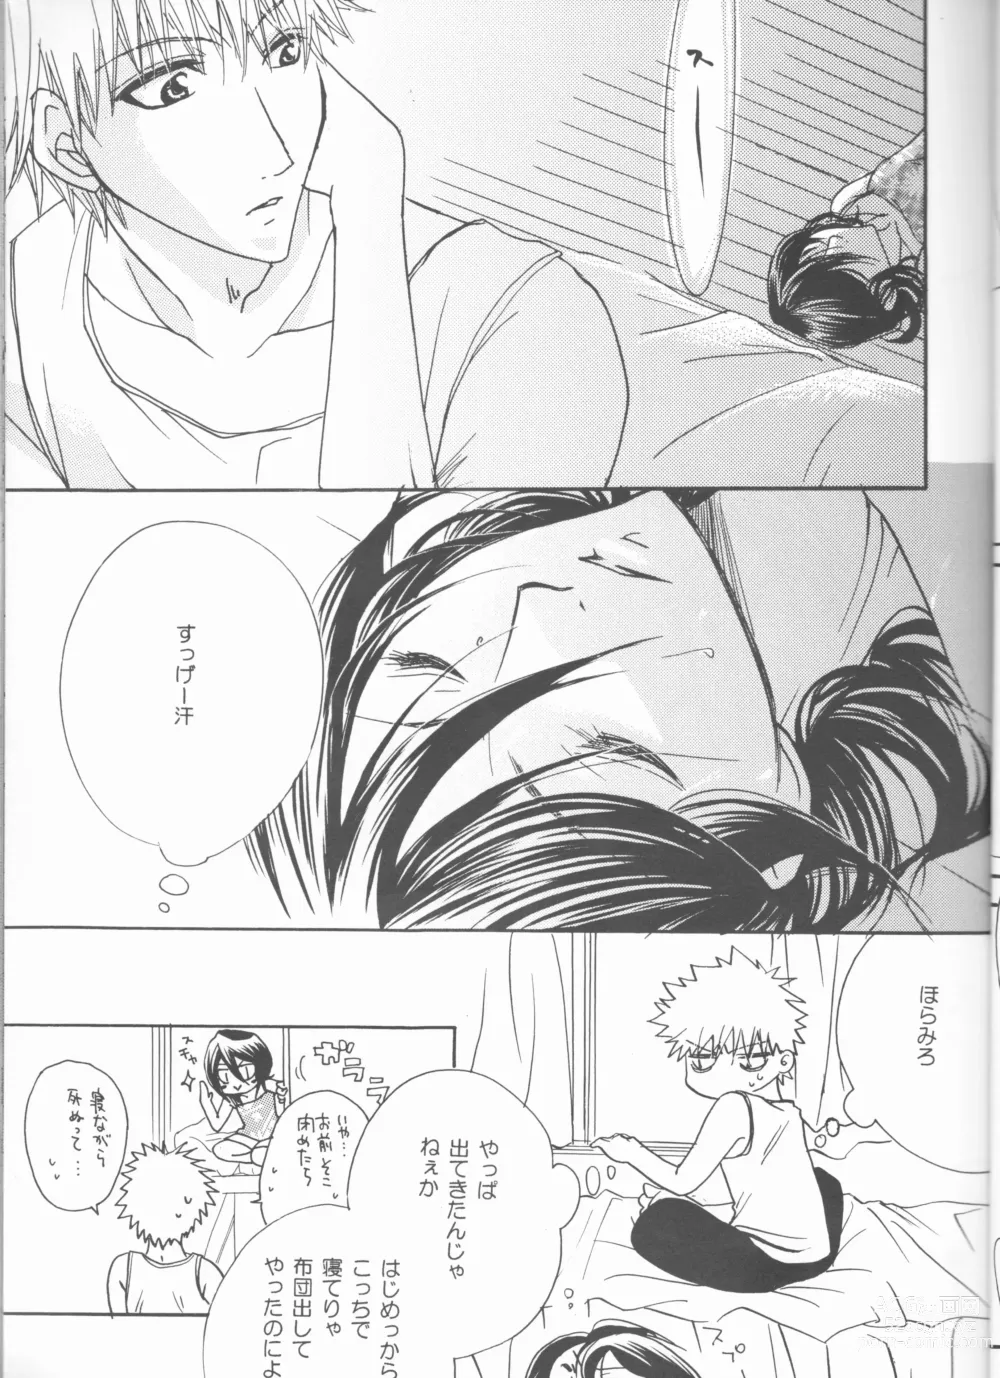 Page 19 of doujinshi Kimi o suki ni natte hajimete no natsu ga kuru.